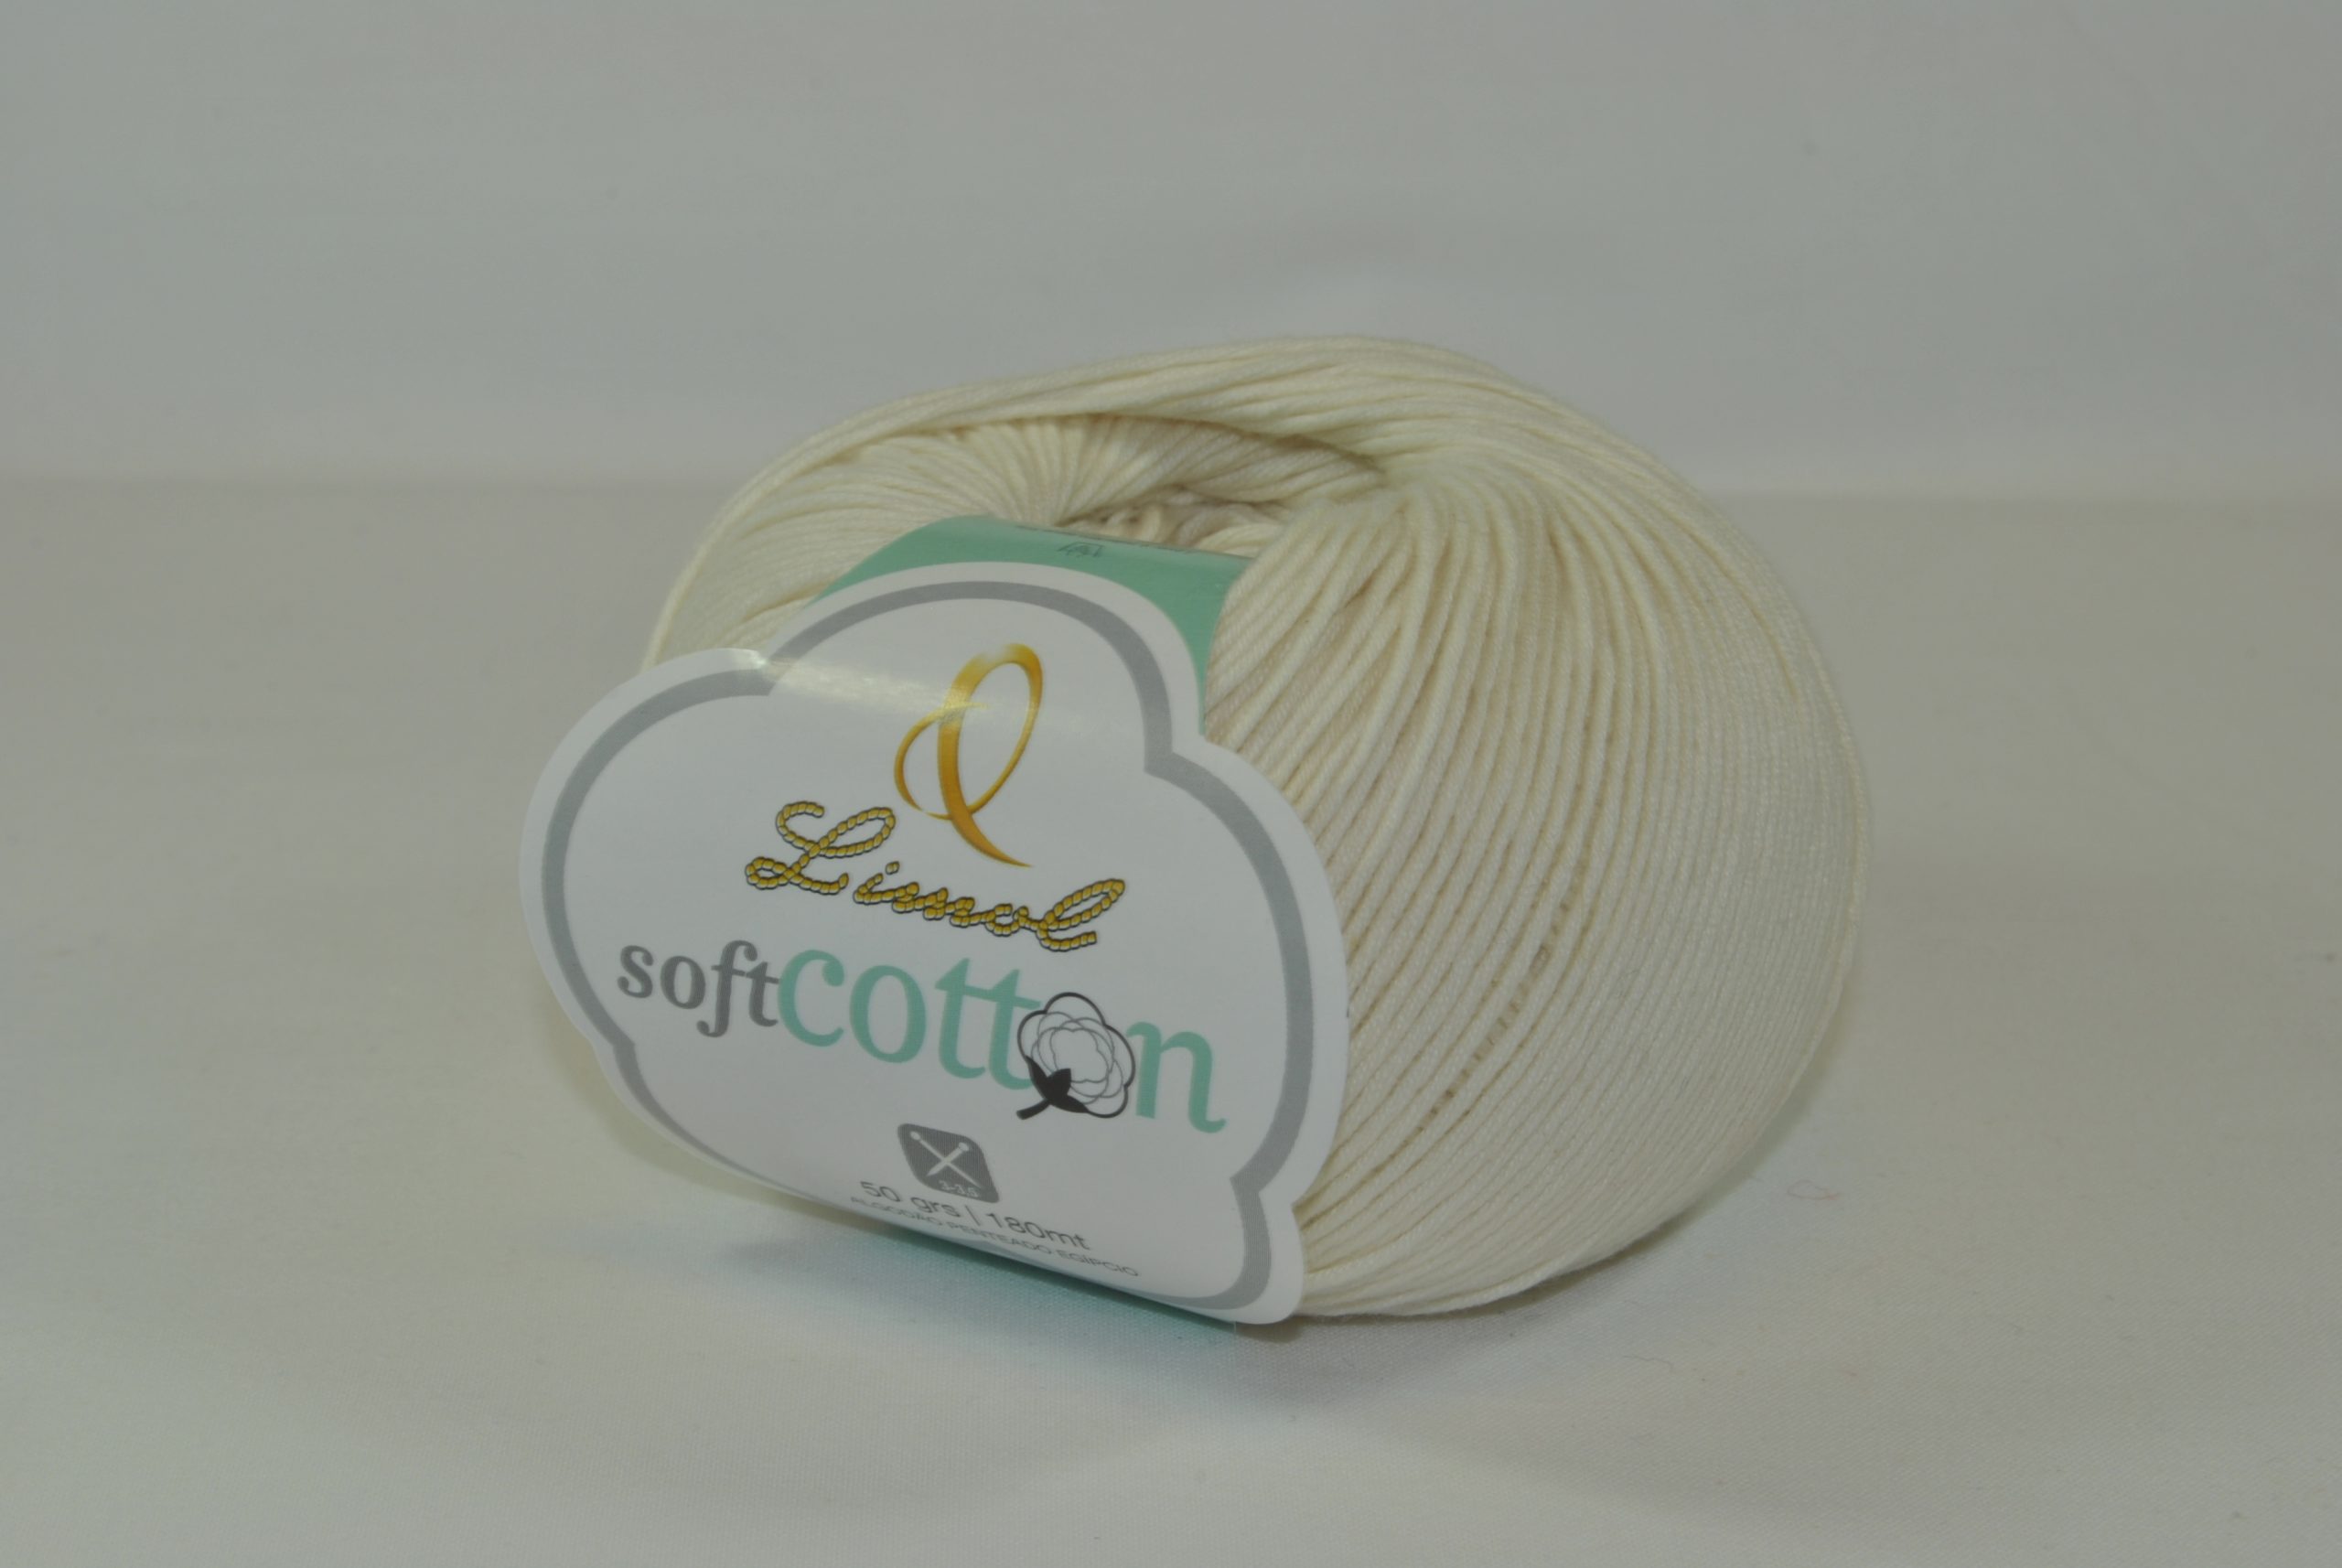 Limol - Soft Cotton 50gr. - Flor de Avilhó